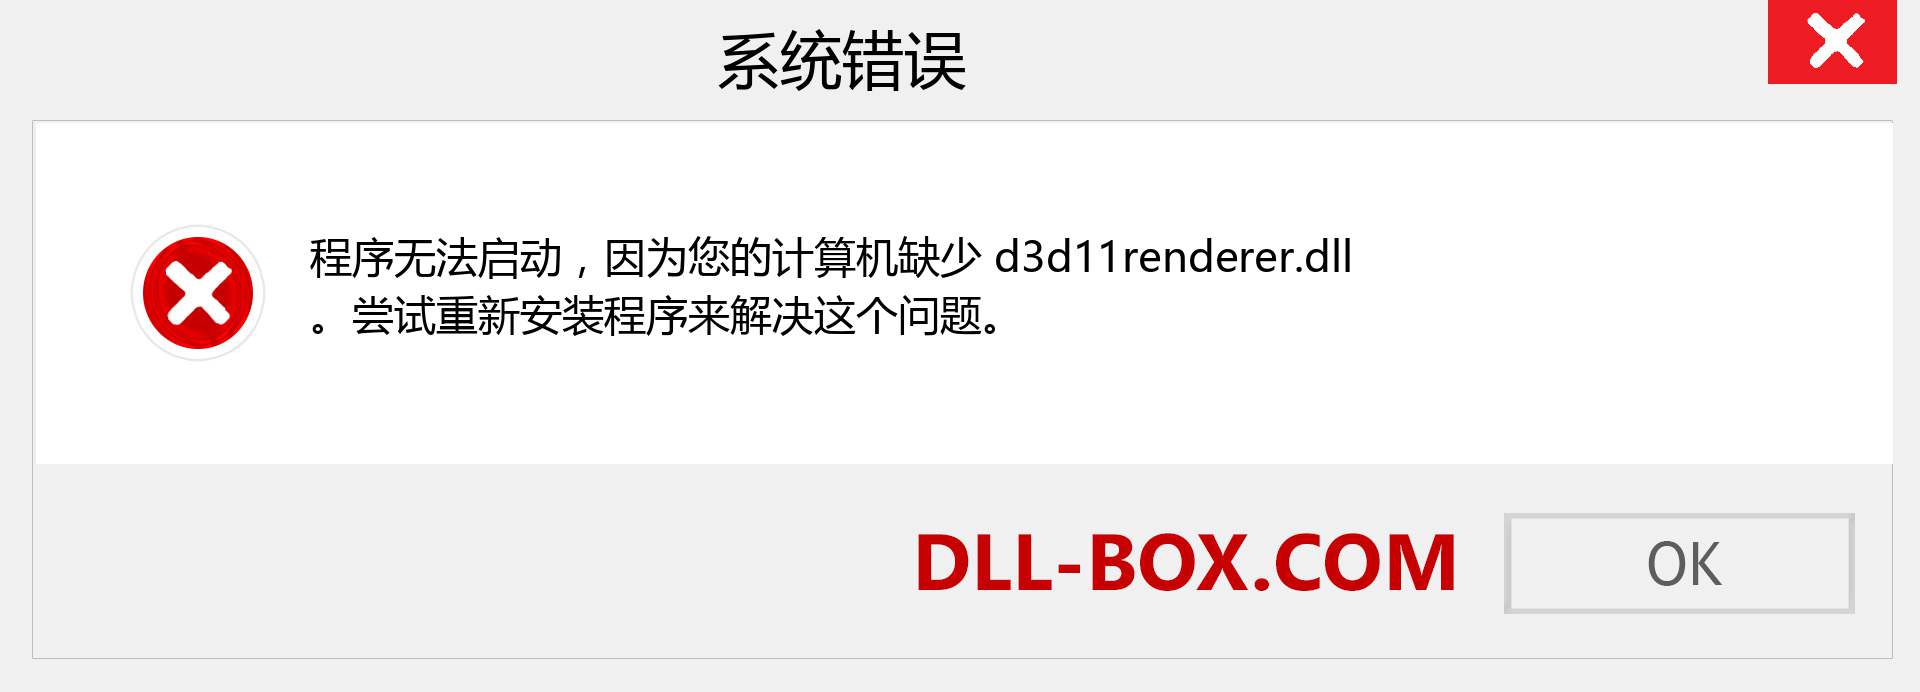 d3d11renderer.dll 文件丢失？。 适用于 Windows 7、8、10 的下载 - 修复 Windows、照片、图像上的 d3d11renderer dll 丢失错误